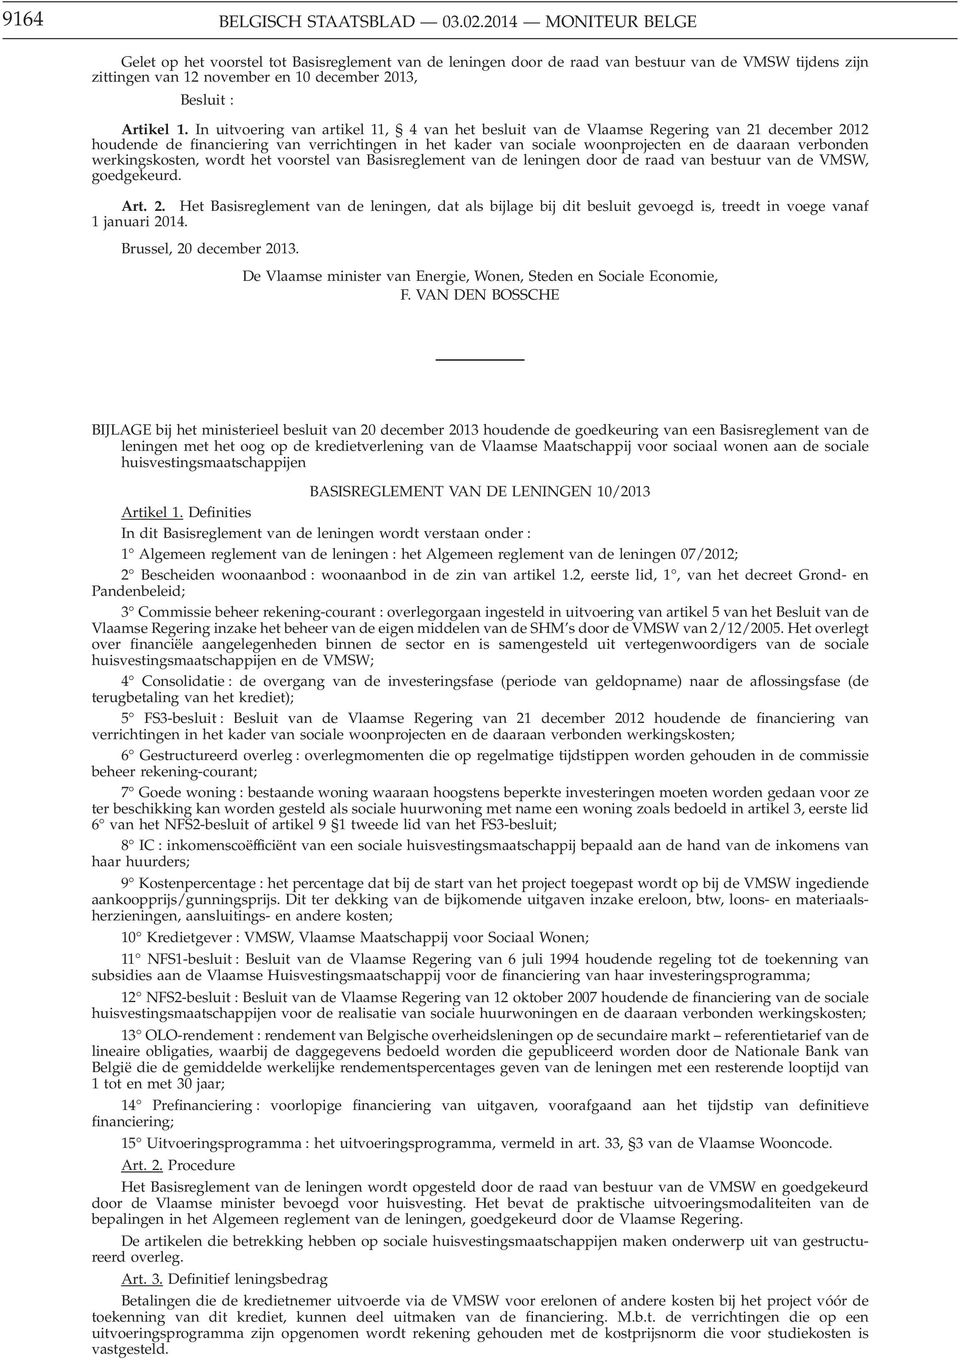 In uitvoering van artikel 11, 4 van het besluit van de Vlaamse Regering van 21 december 2012 houdende de financiering van verrichtingen in het kader van sociale woonprojecten en de daaraan verbonden